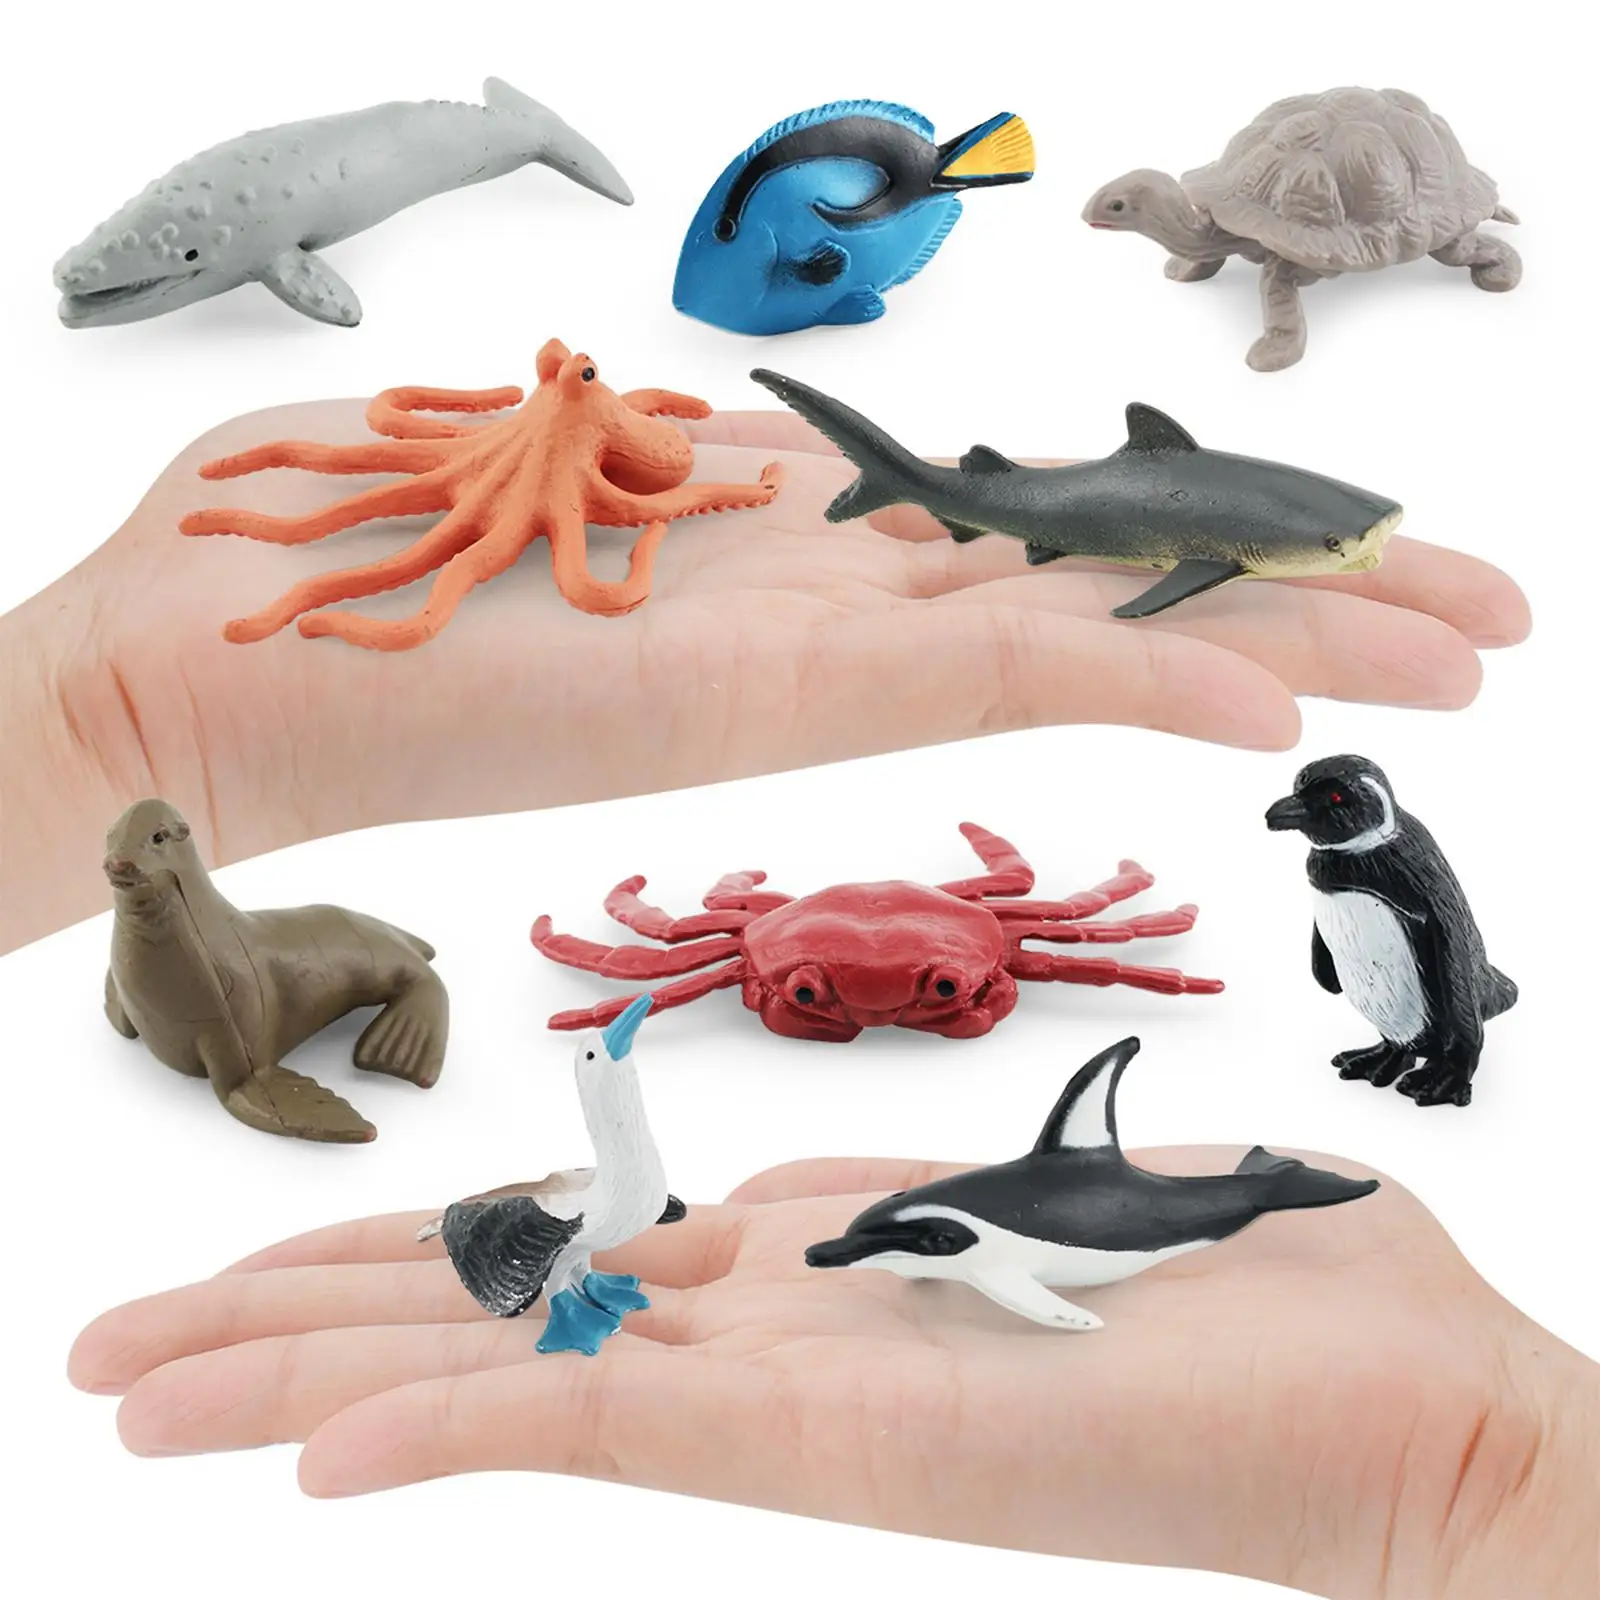 10Pcs Lifelike Marine Animal Figurines Kids Mini Figurines Models for Gifts